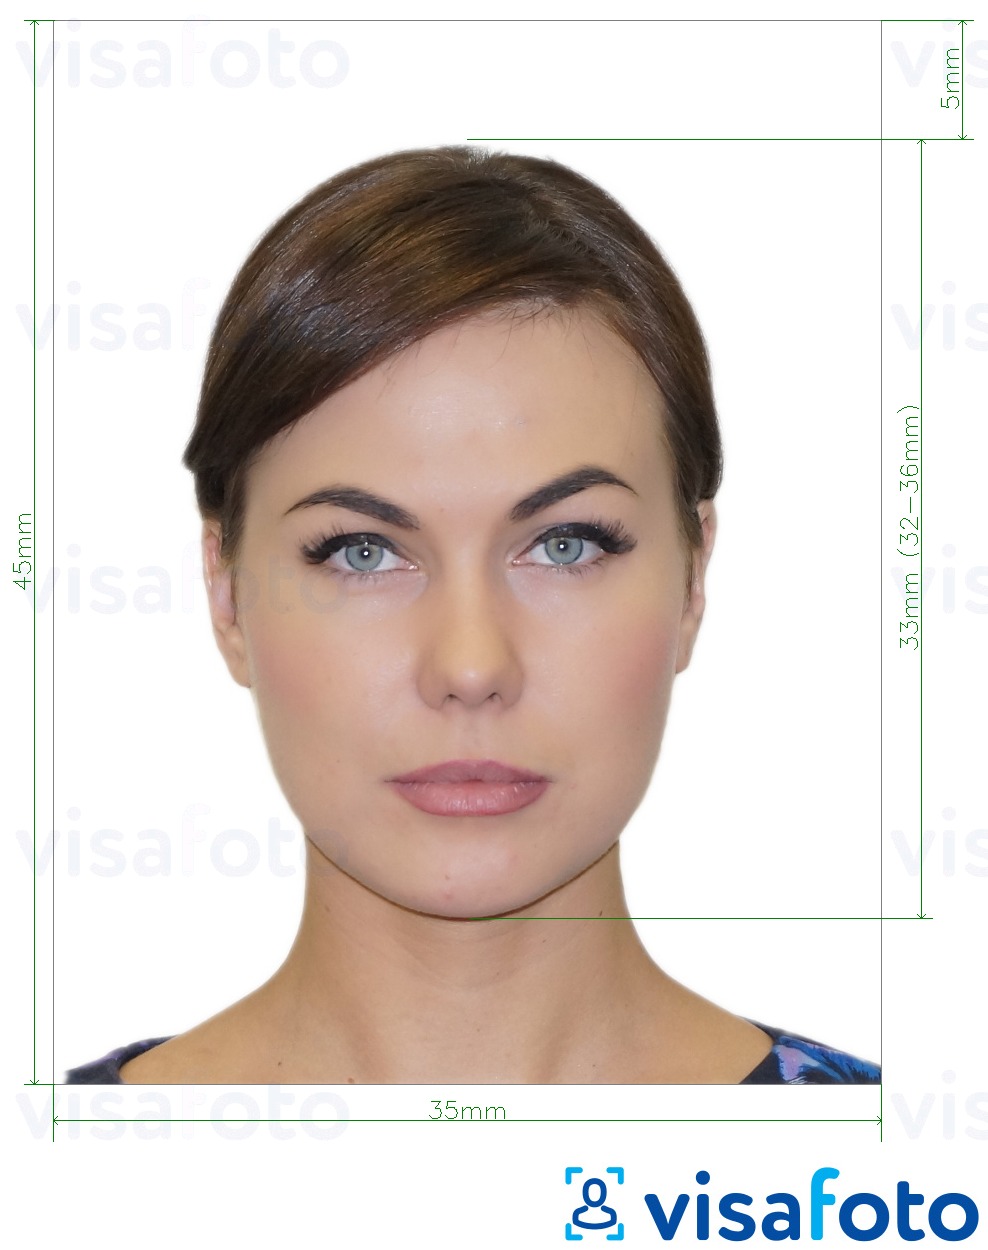 Contoh dari foto untuk Fan ID Rusia  piksel dengan ukuran spesifikasi yang tepat